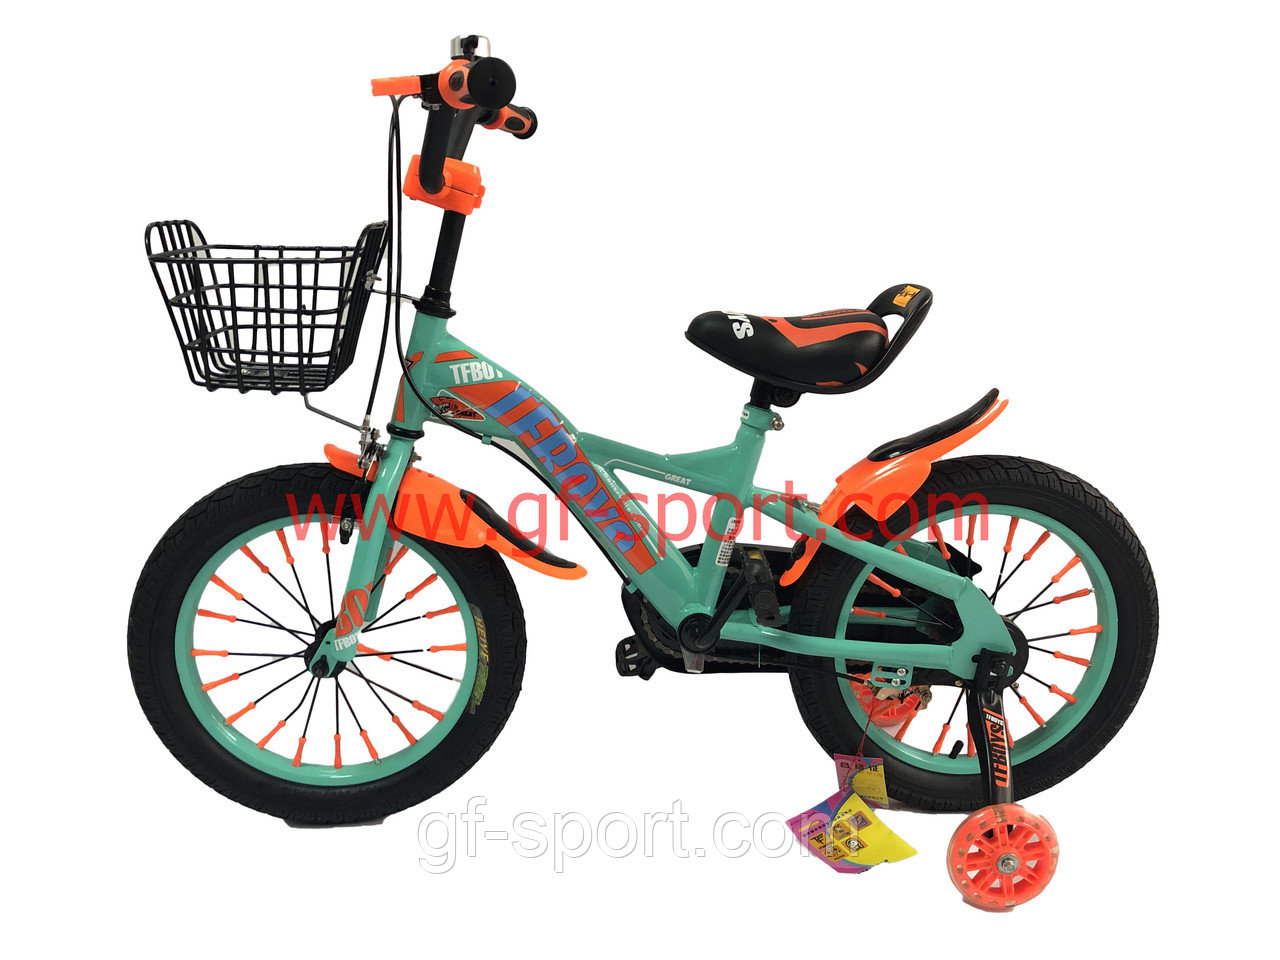 Велосипед Phillips бирюзовый оригинал детский с холостым ходом 16 размер